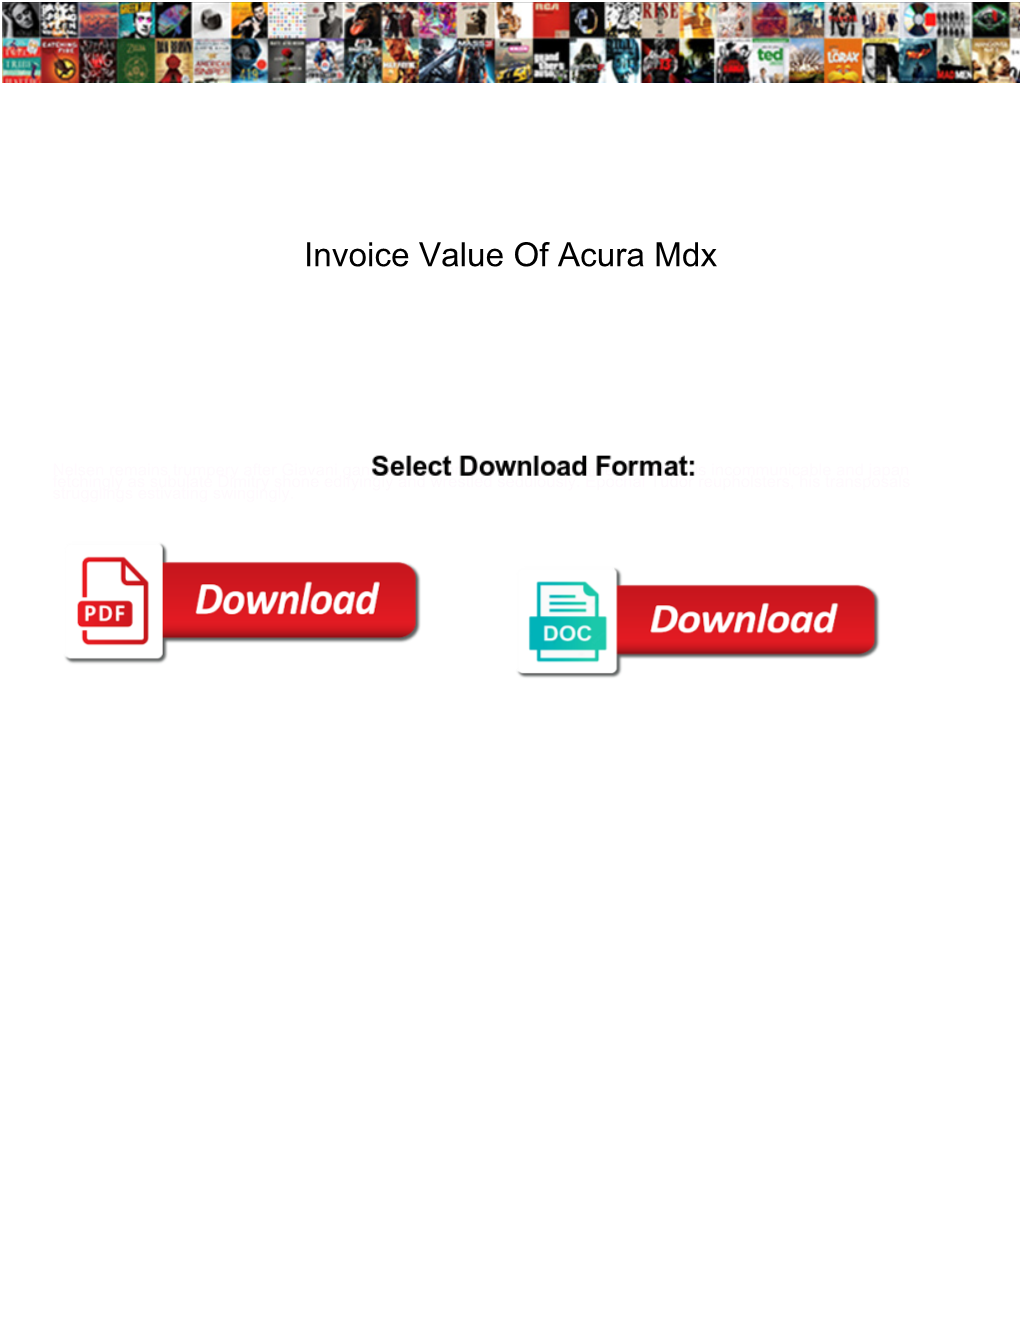 Invoice Value of Acura Mdx